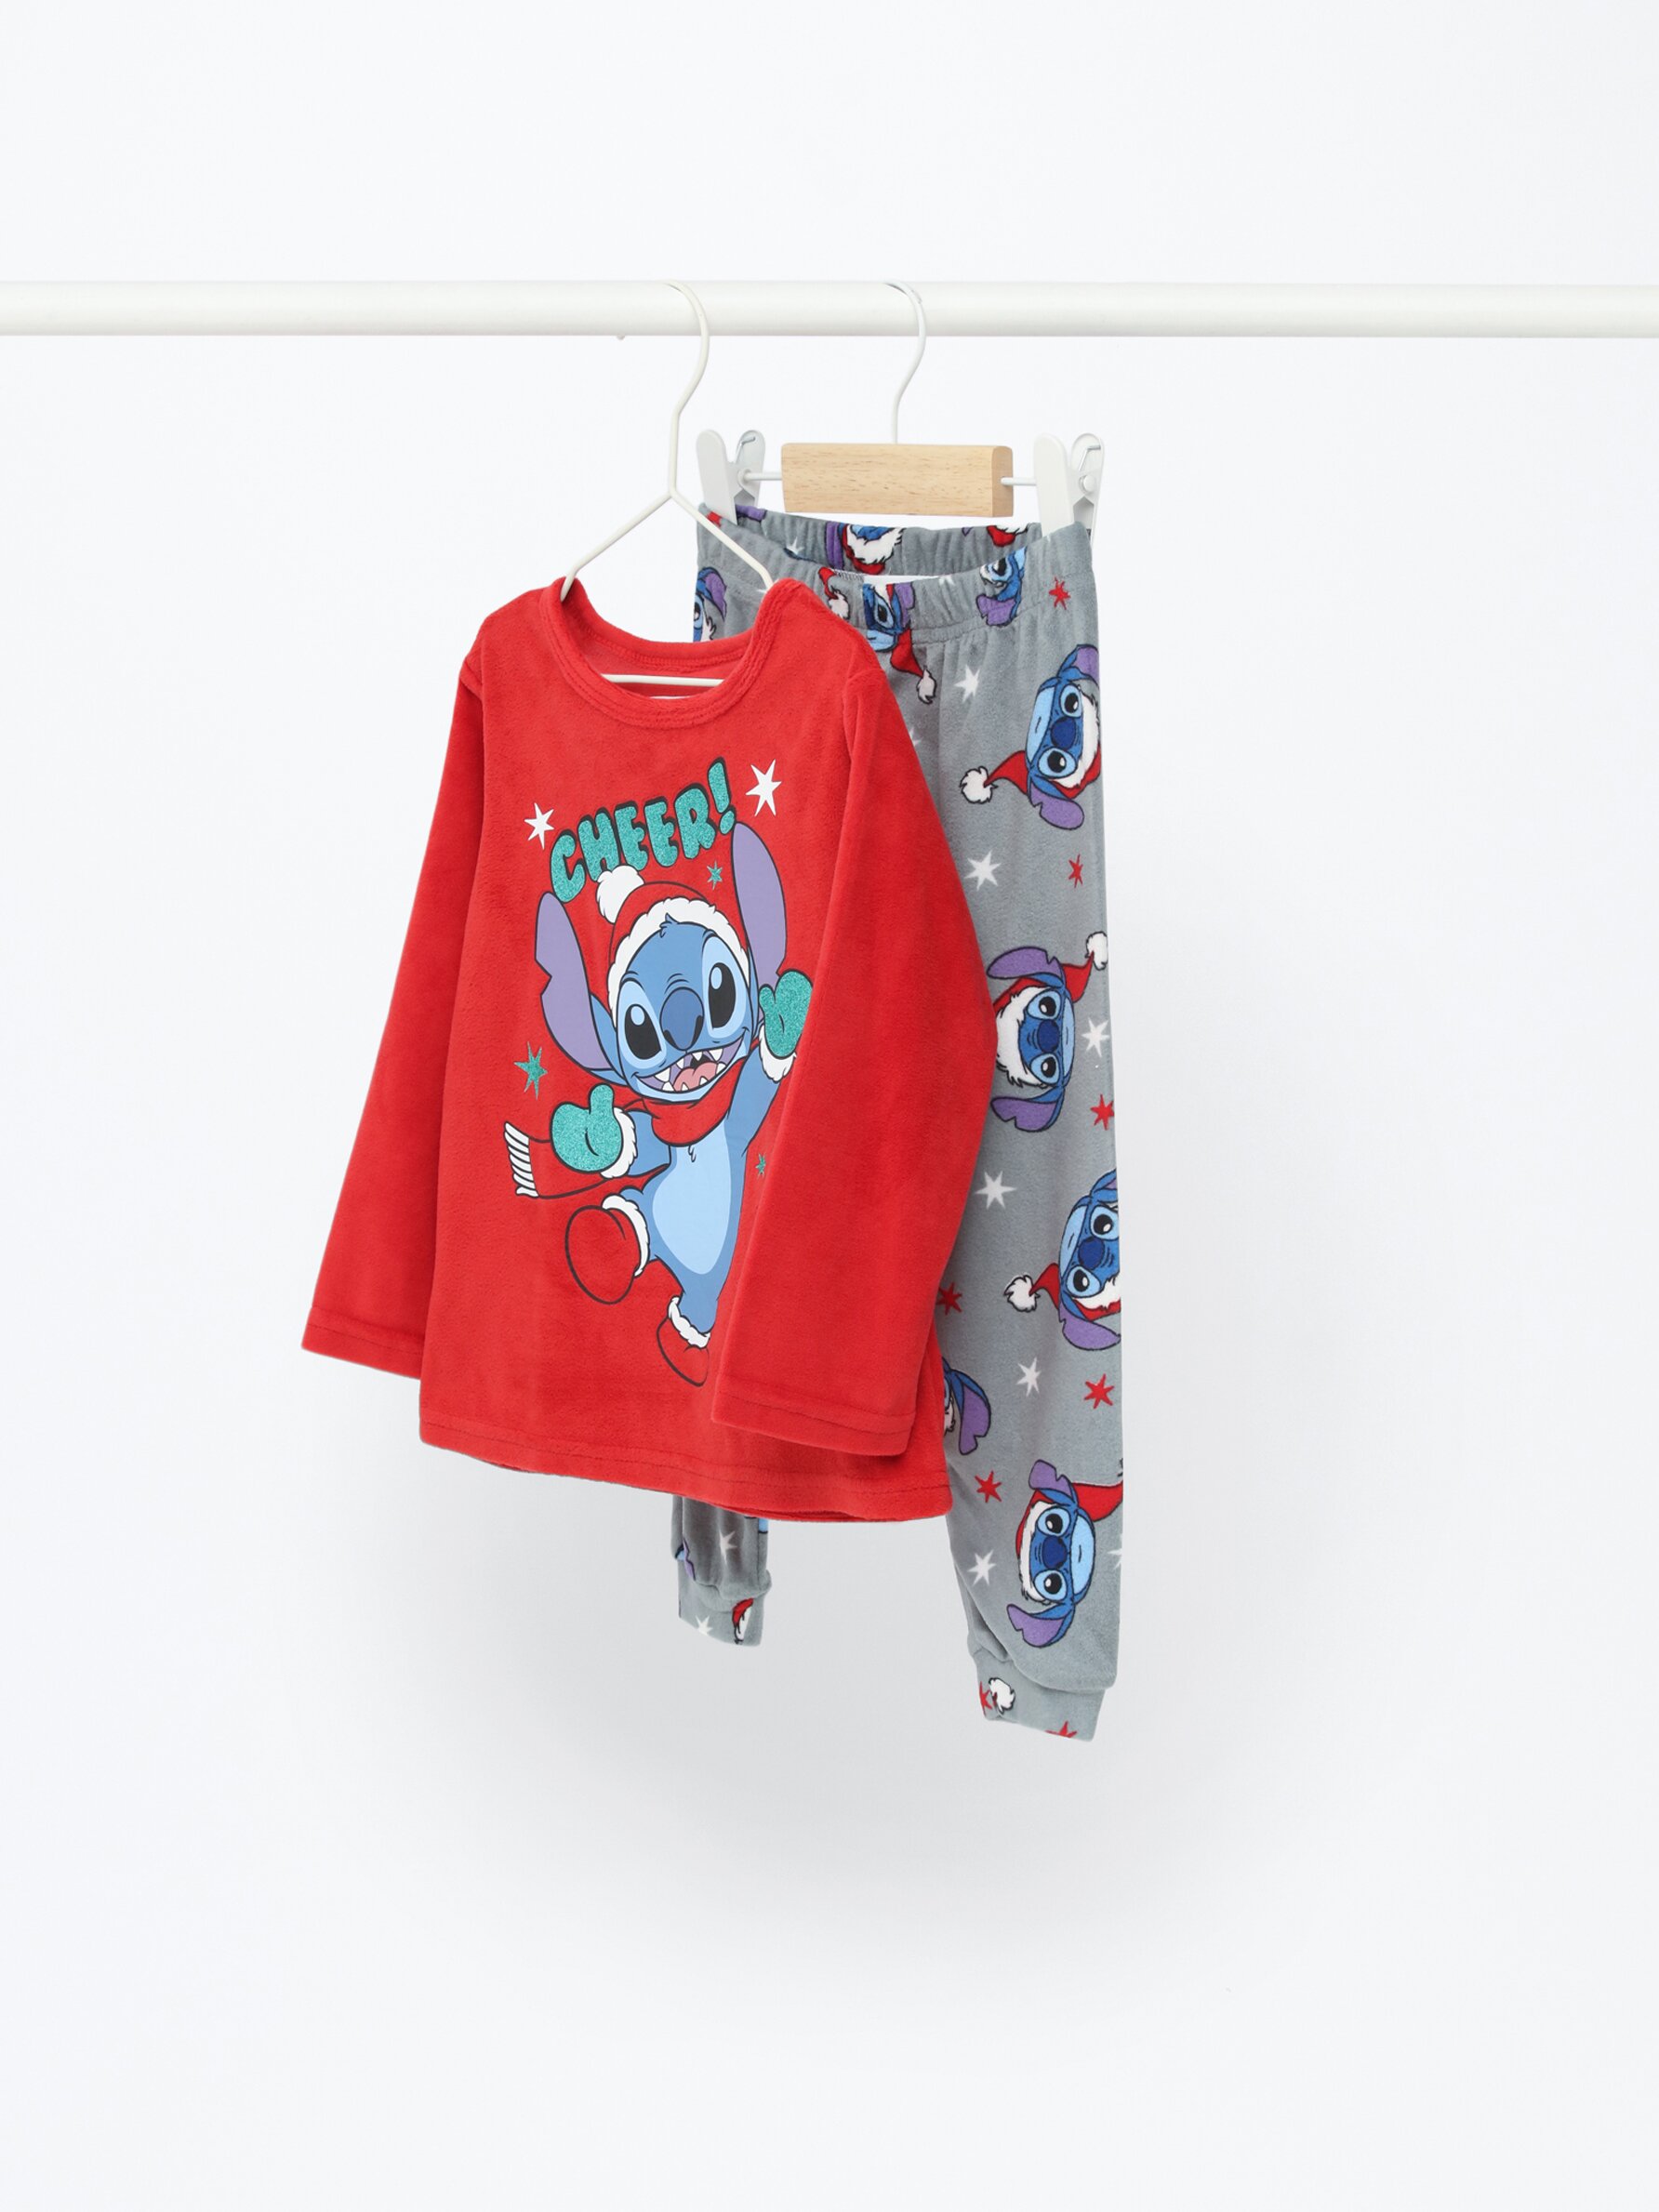 Conjunto Pijama Stitch para niños